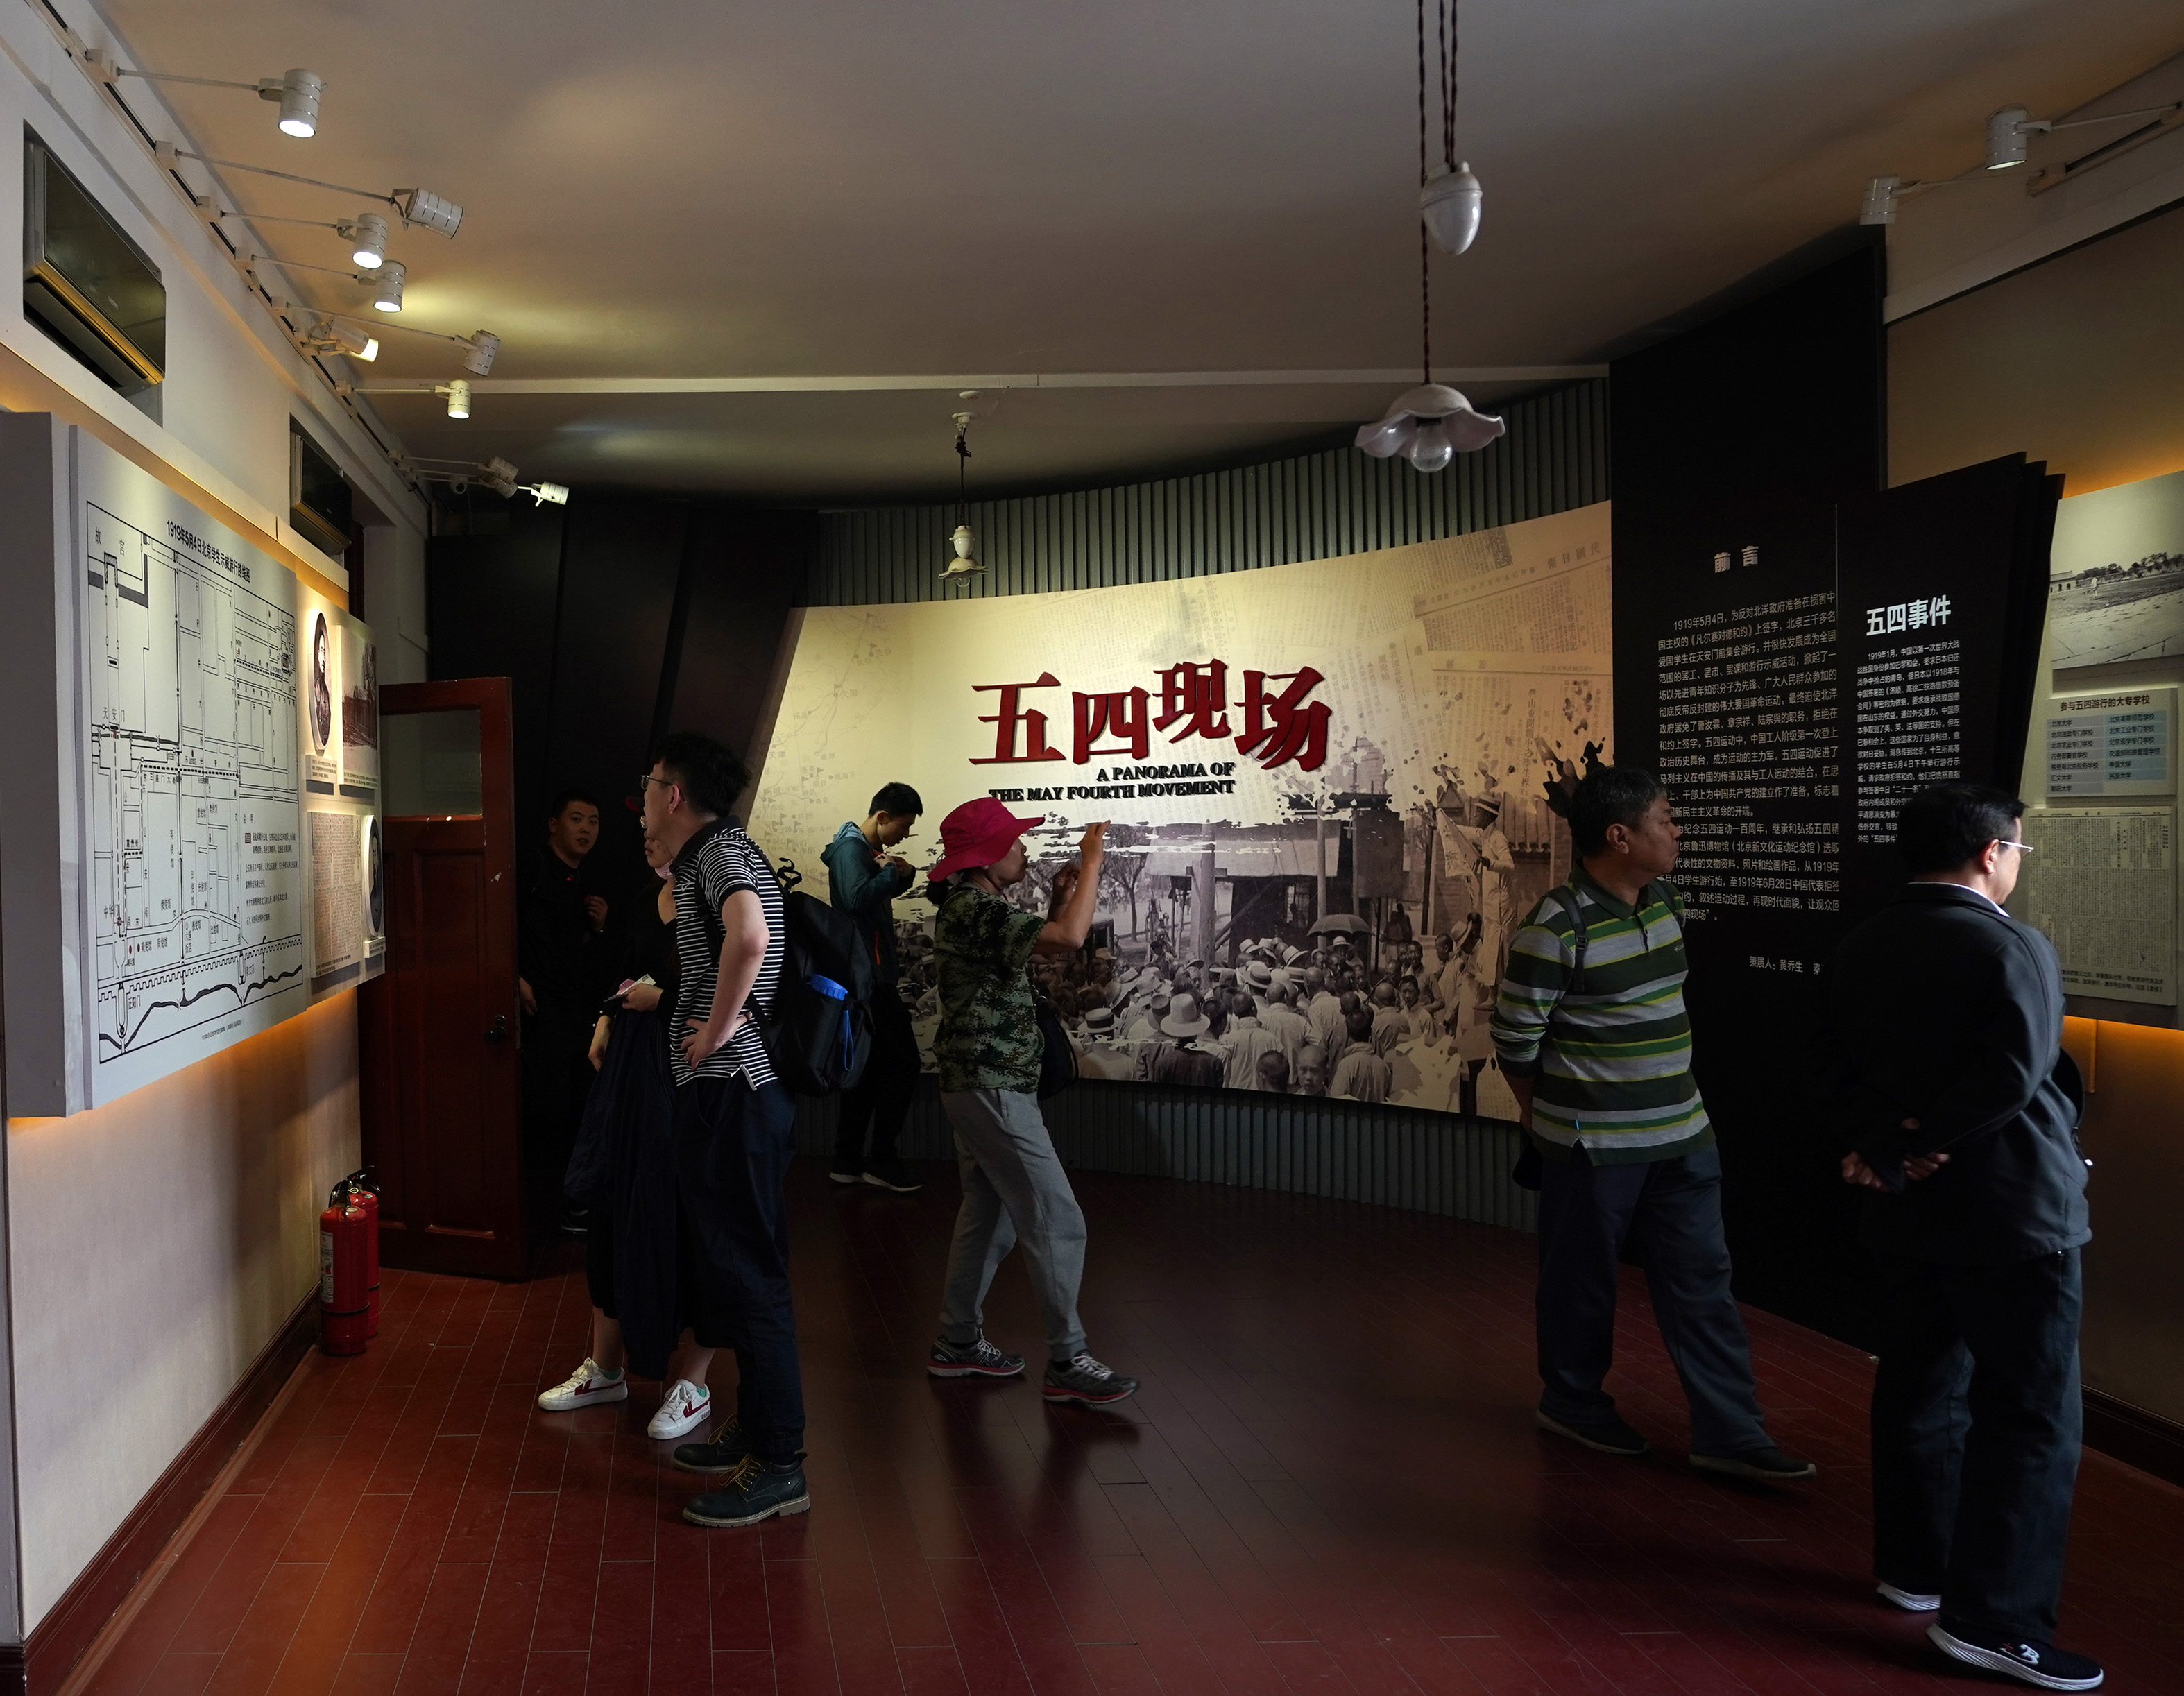 5月3日,参观者在依托原北京大学红楼建立的北京新文化运动纪念馆内